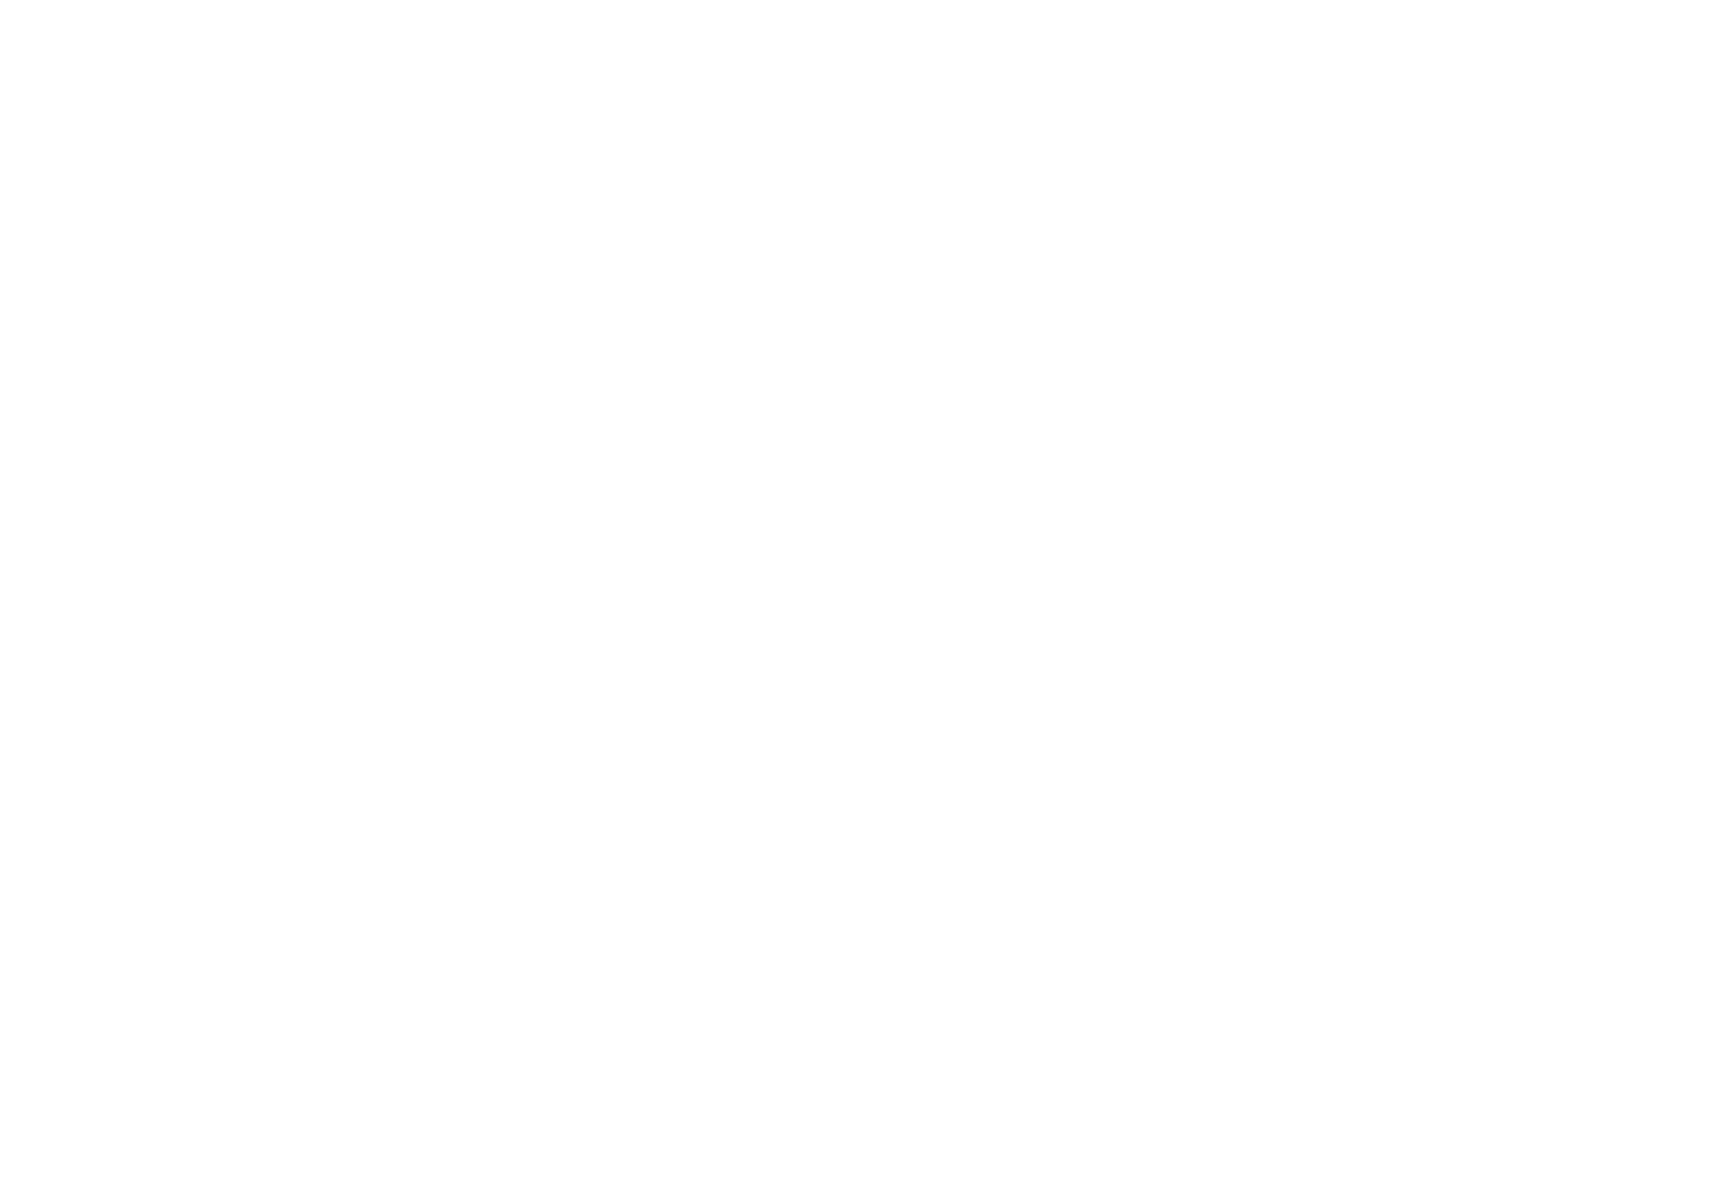 Come & Join Us Peel, Crack, Dip, Eat & Repeat